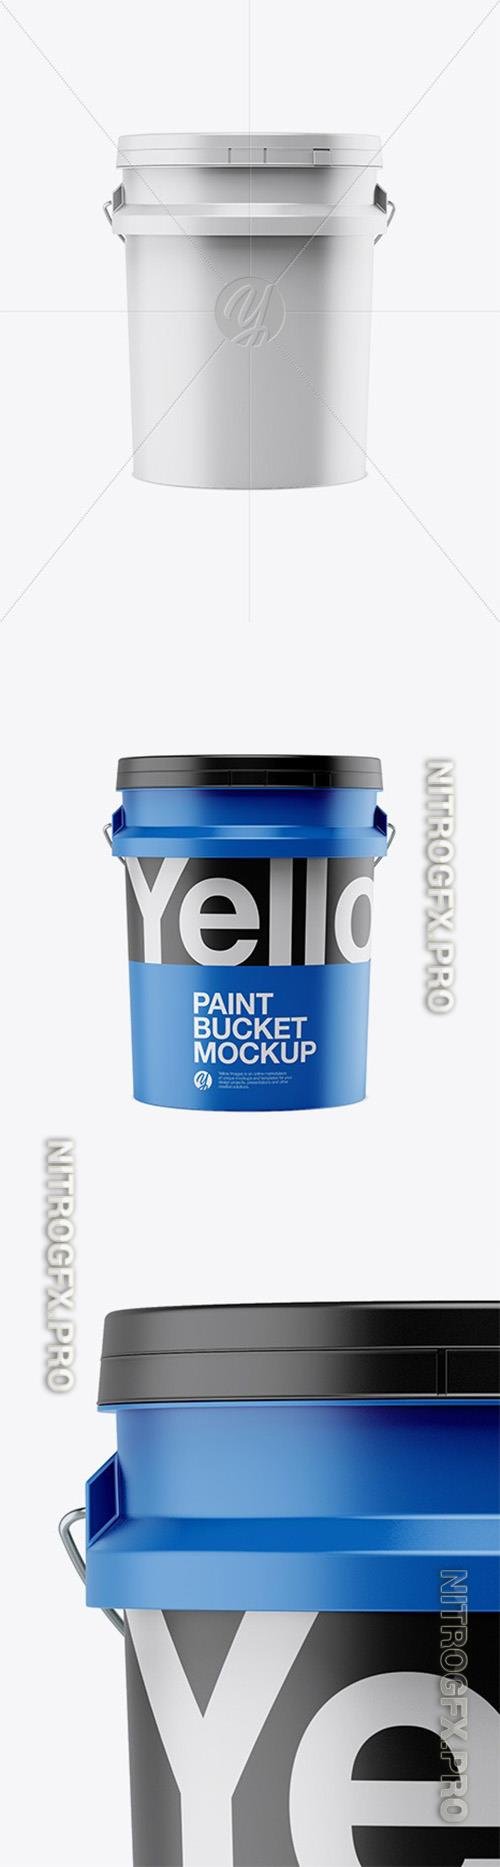 5L Matte Paint Bucket Mockup - Front View 30178